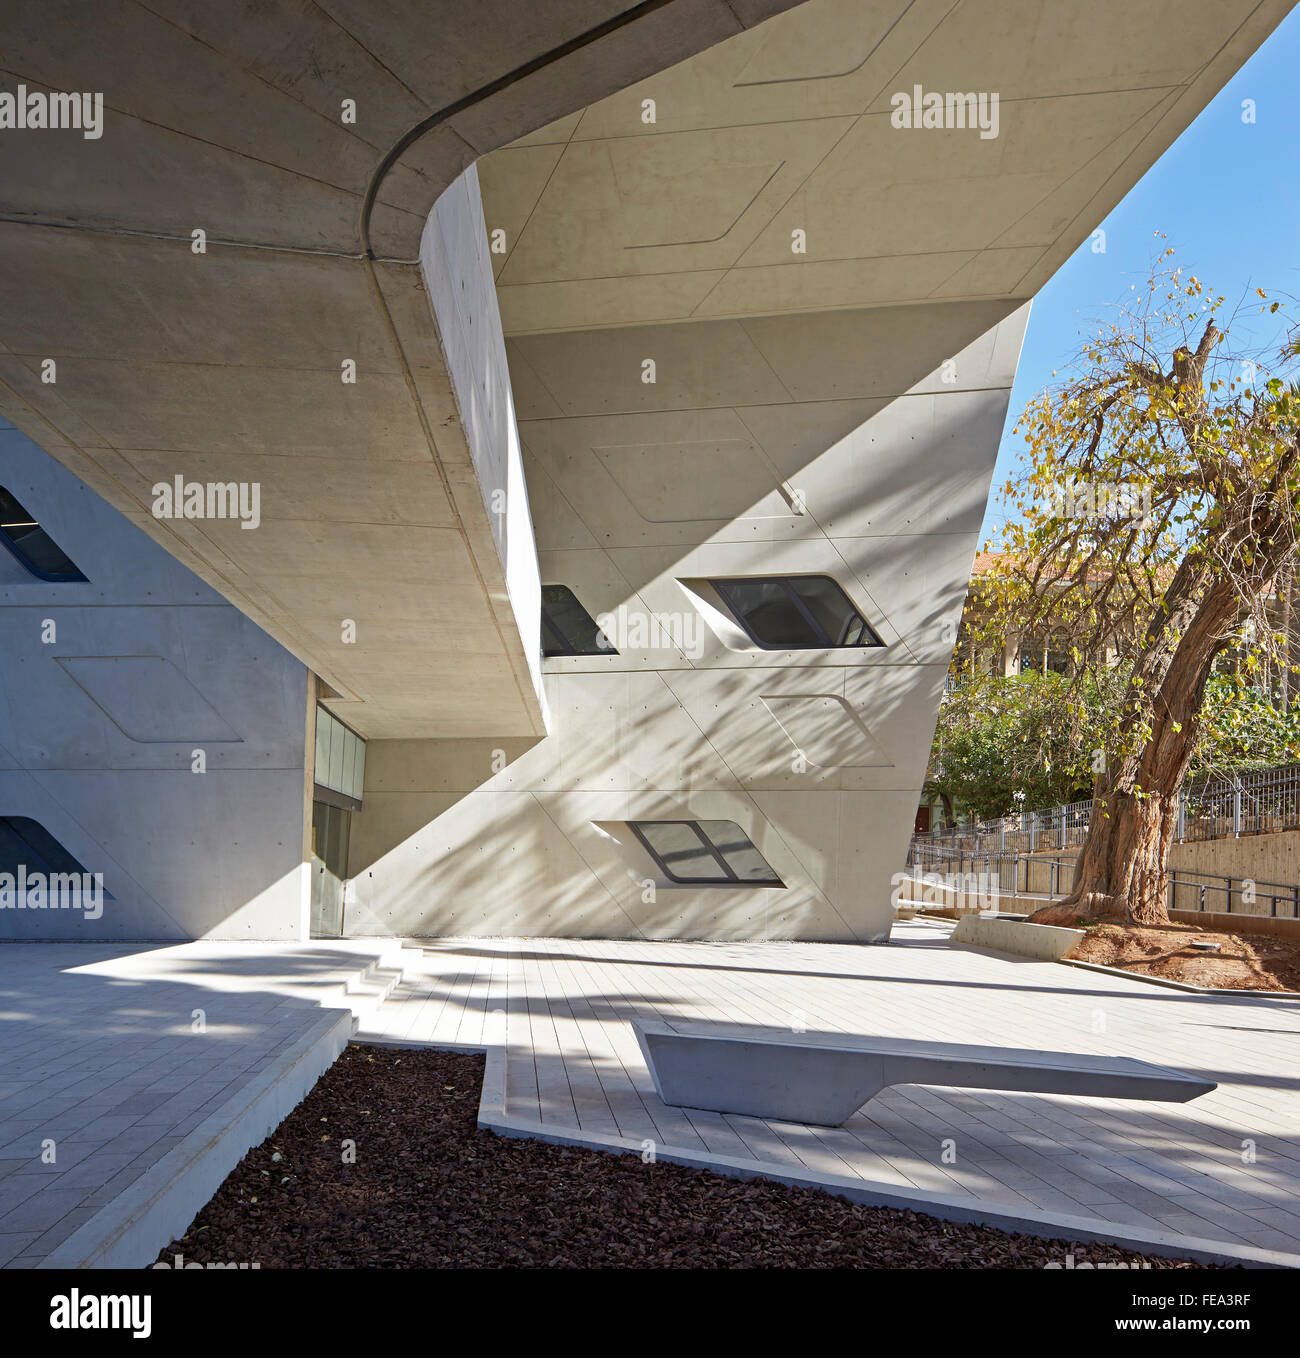 Posti a sedere esterni e le superfici in cemento. Issam Fares Institute, Beirut, Beirut, Libano. Architetto: Zaha Hadid Architects, 2014. Foto Stock